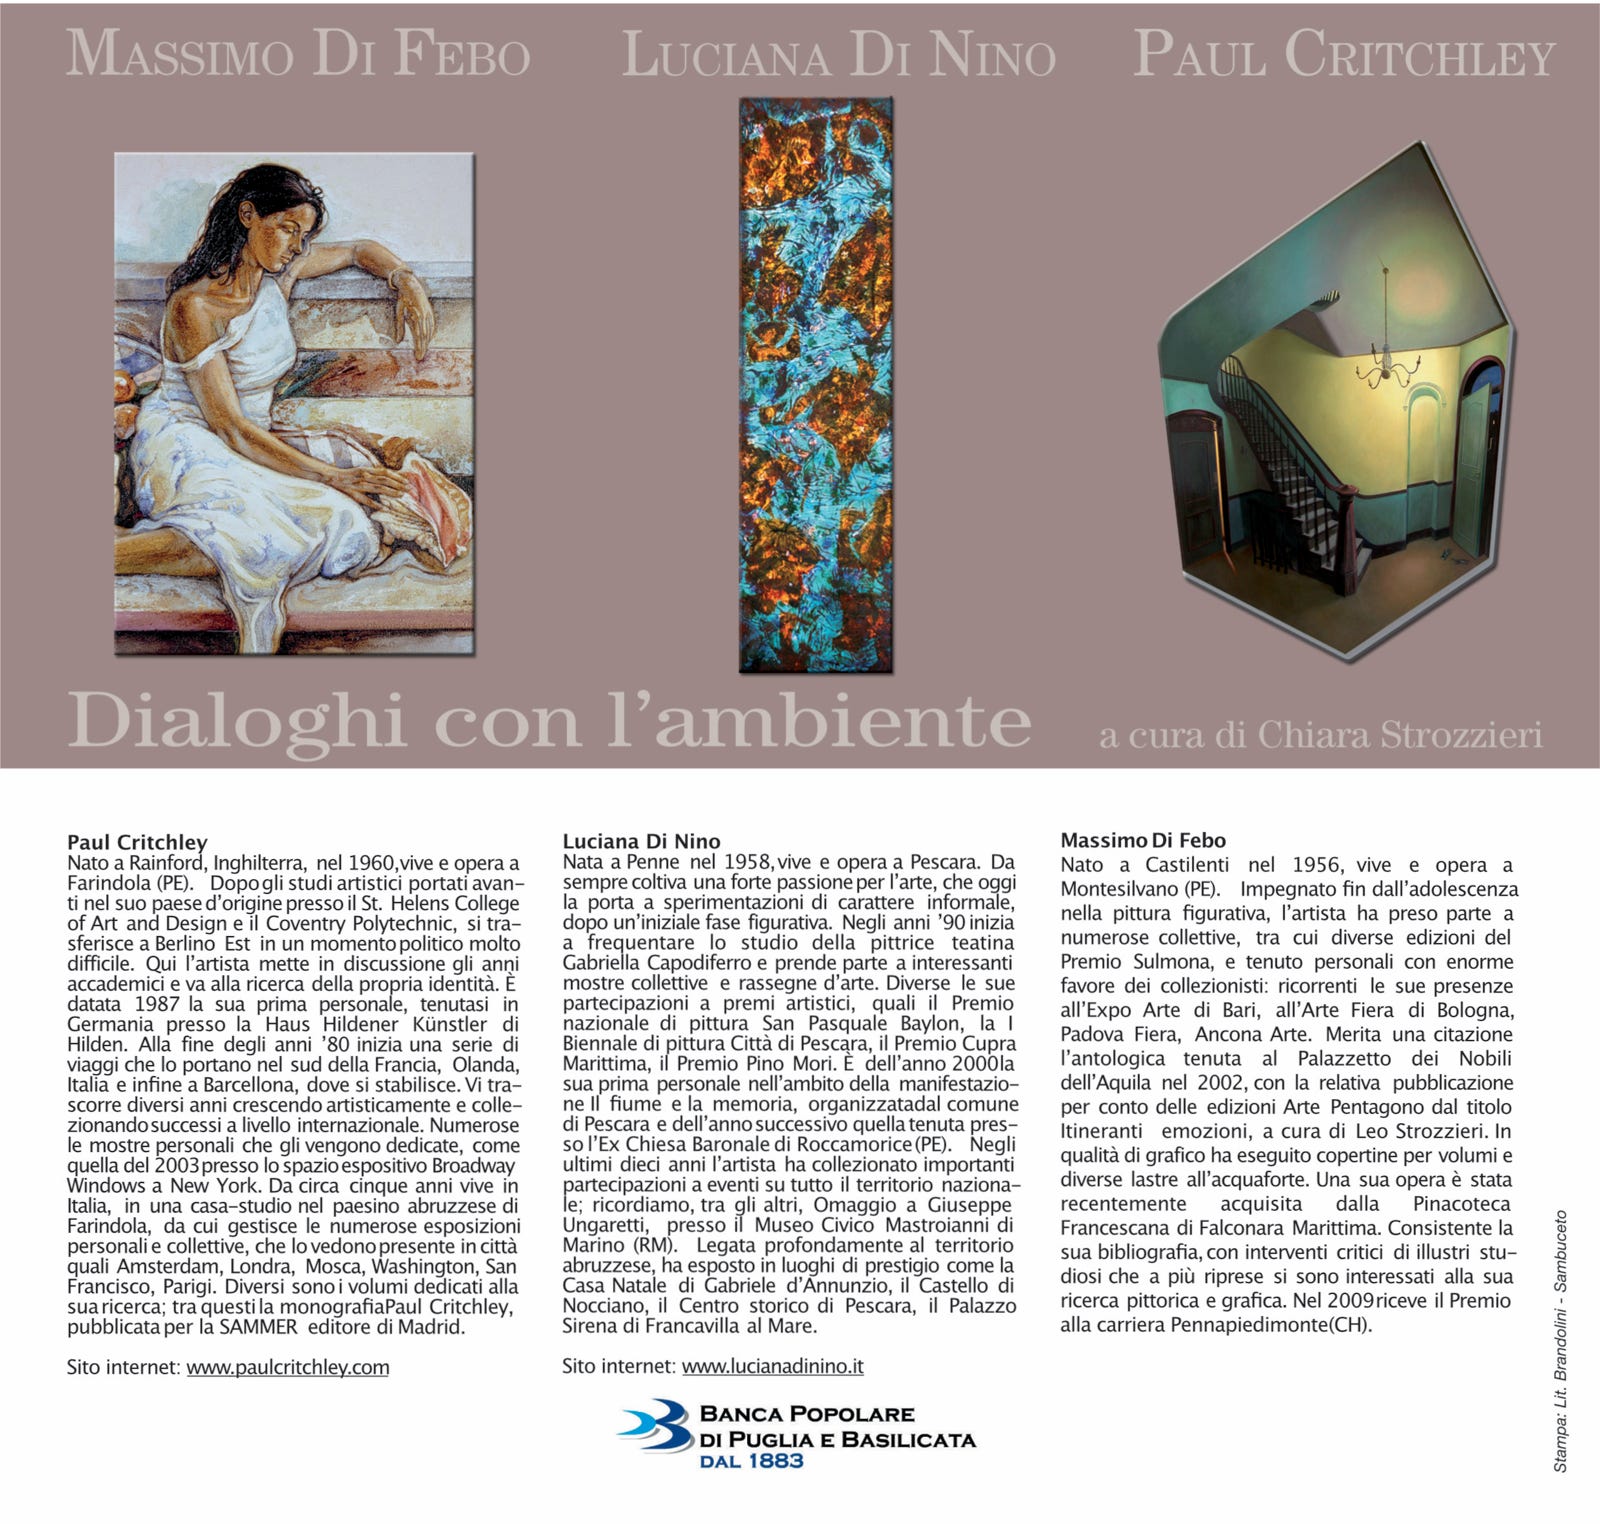 Invitation for the exhibition 'Dialoghi con l'ambiente'